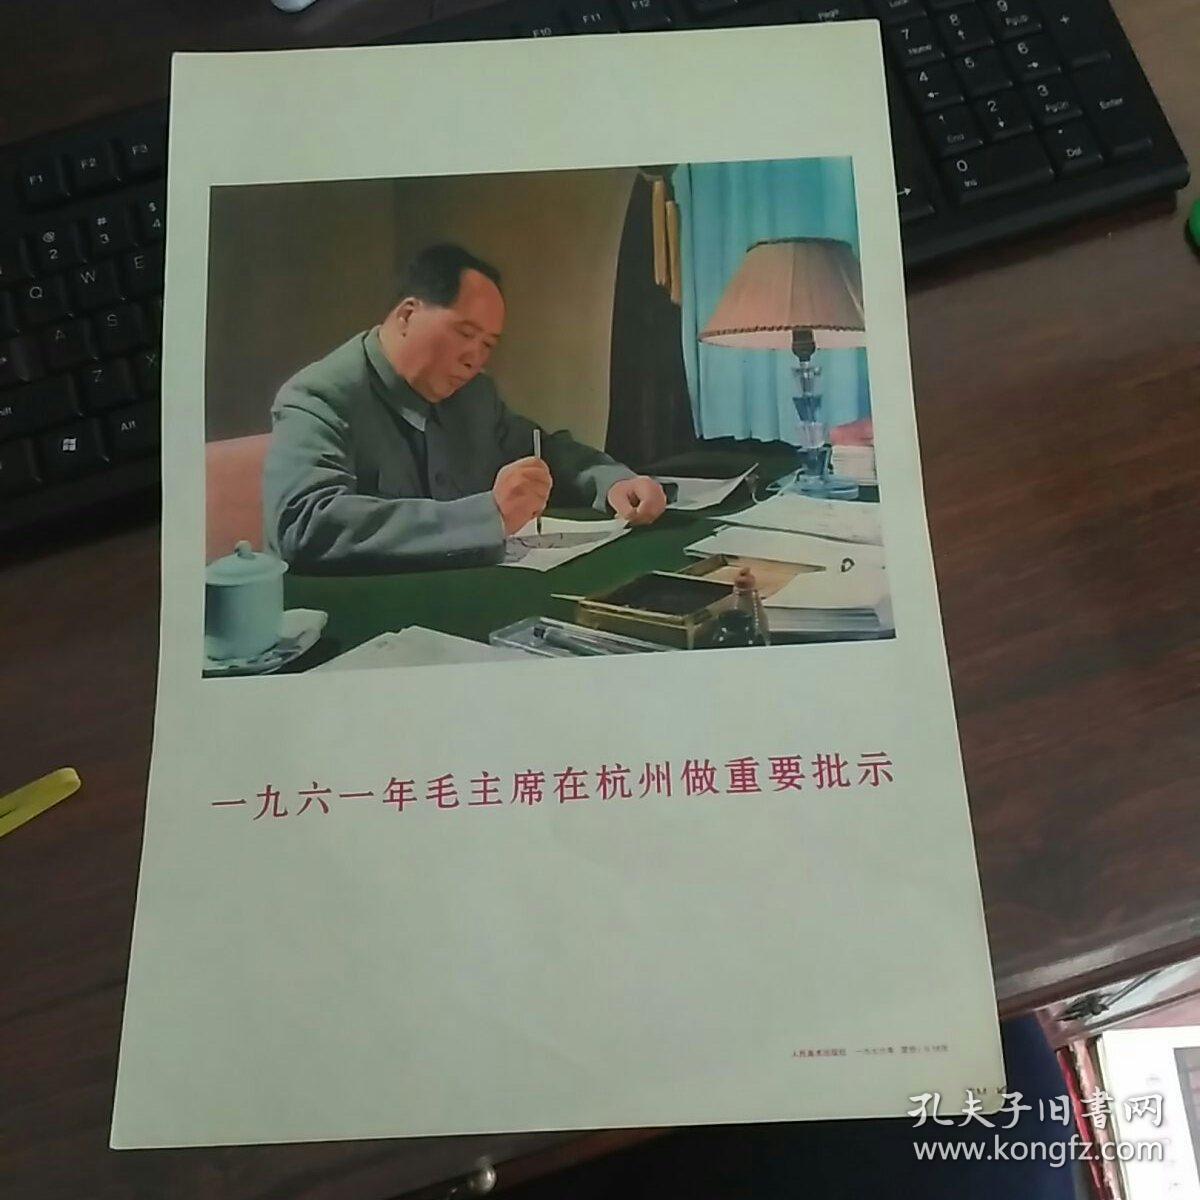 宣传画  一九六一年毛主席在杭州做重要批示